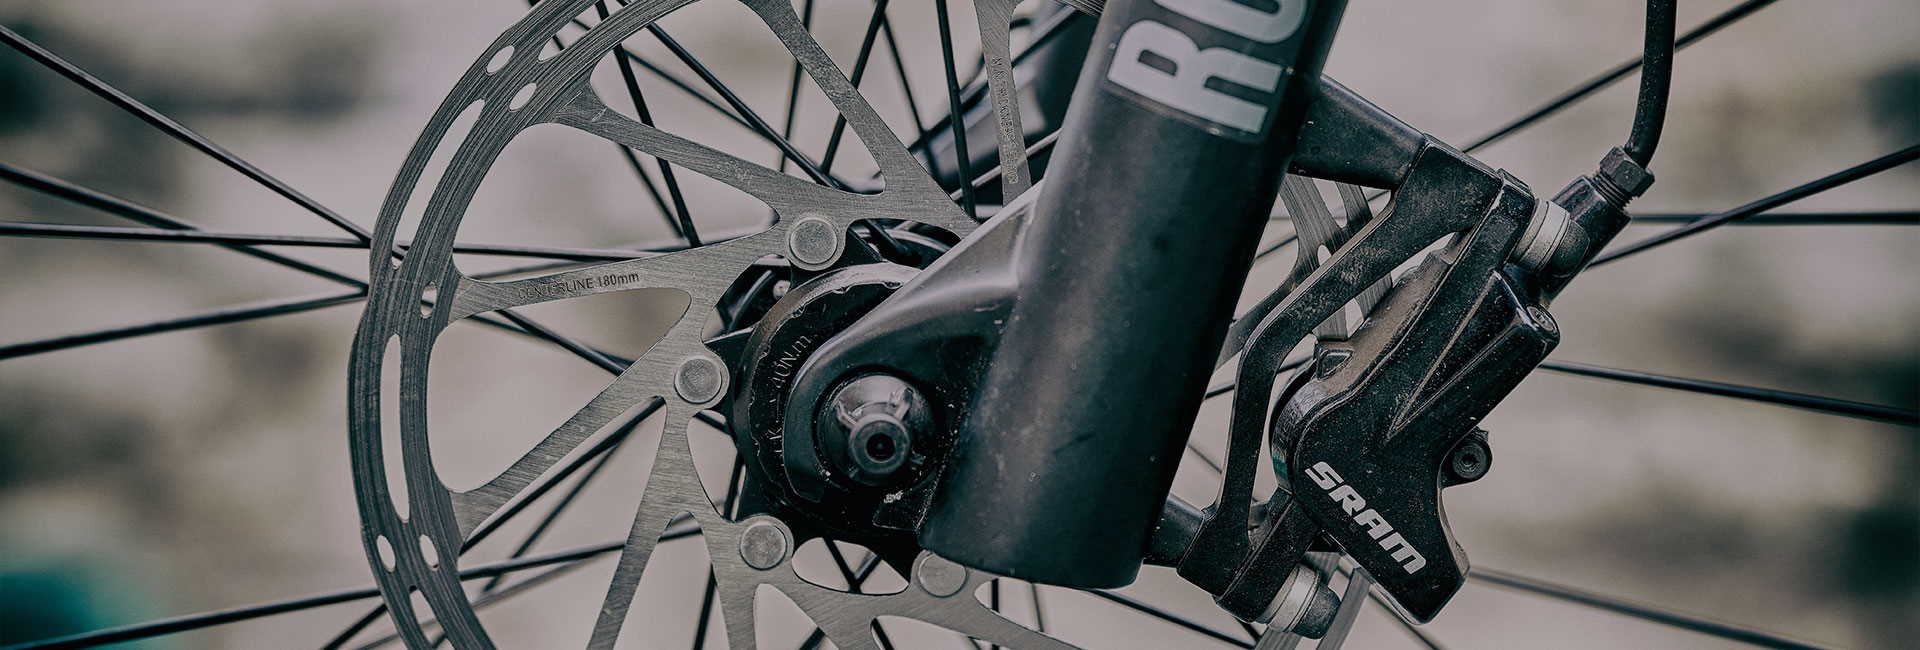 FISCHER E-Bikes | Vorbau Ersatz | 31,8mm | | | ZOOM | Lenker Lenkervorbau AHEAD | | Zubehör Griffe Verschleissteile verstellbar Vorbau